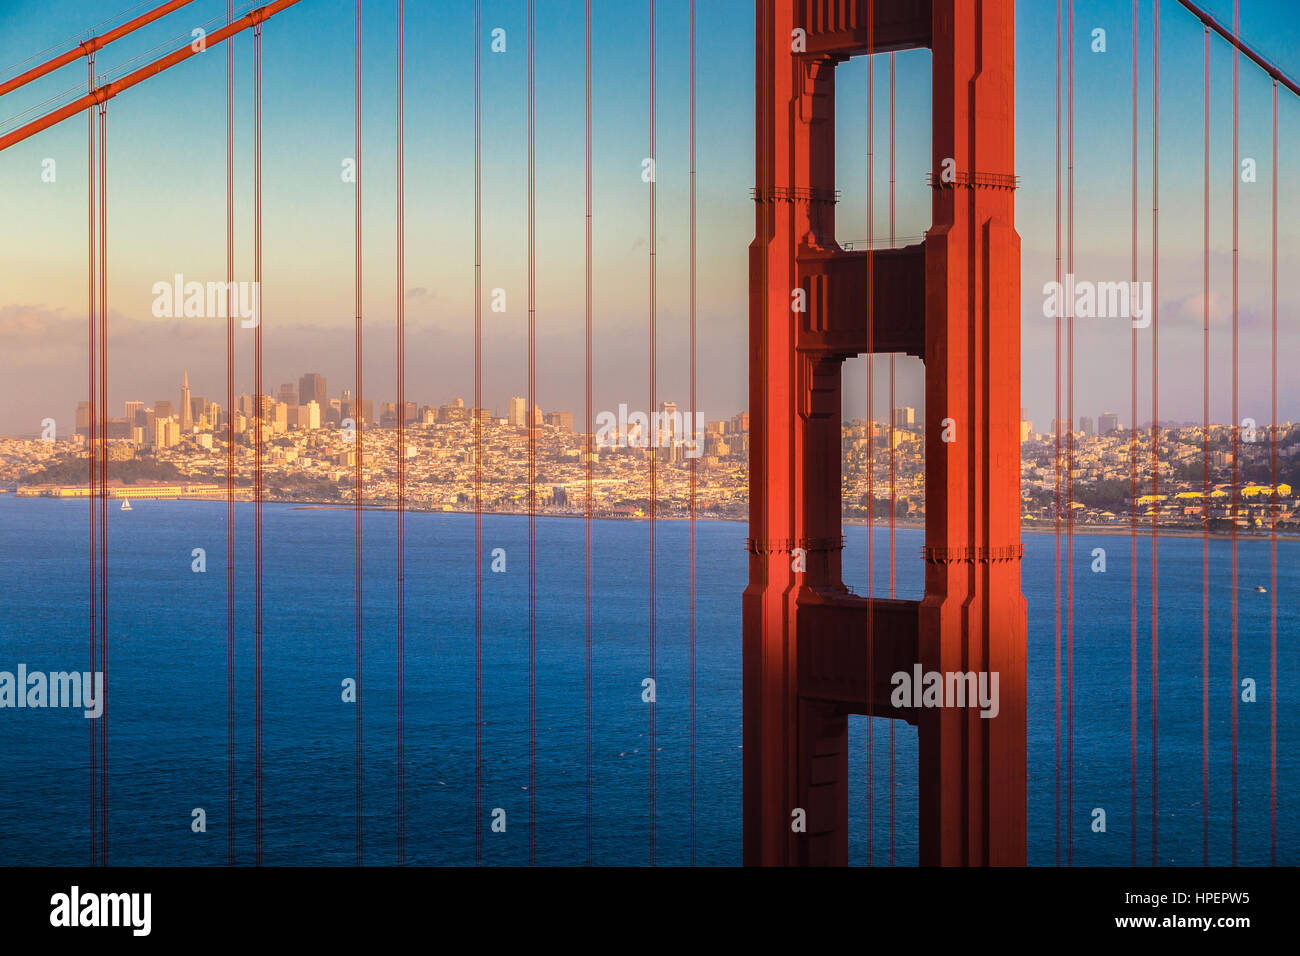 Vista clásica del famoso puente Golden Gate con el horizonte de la ciudad de San Francisco en el fondo iluminado en la hermosa luz del atardecer dorado al atardecer Foto de stock